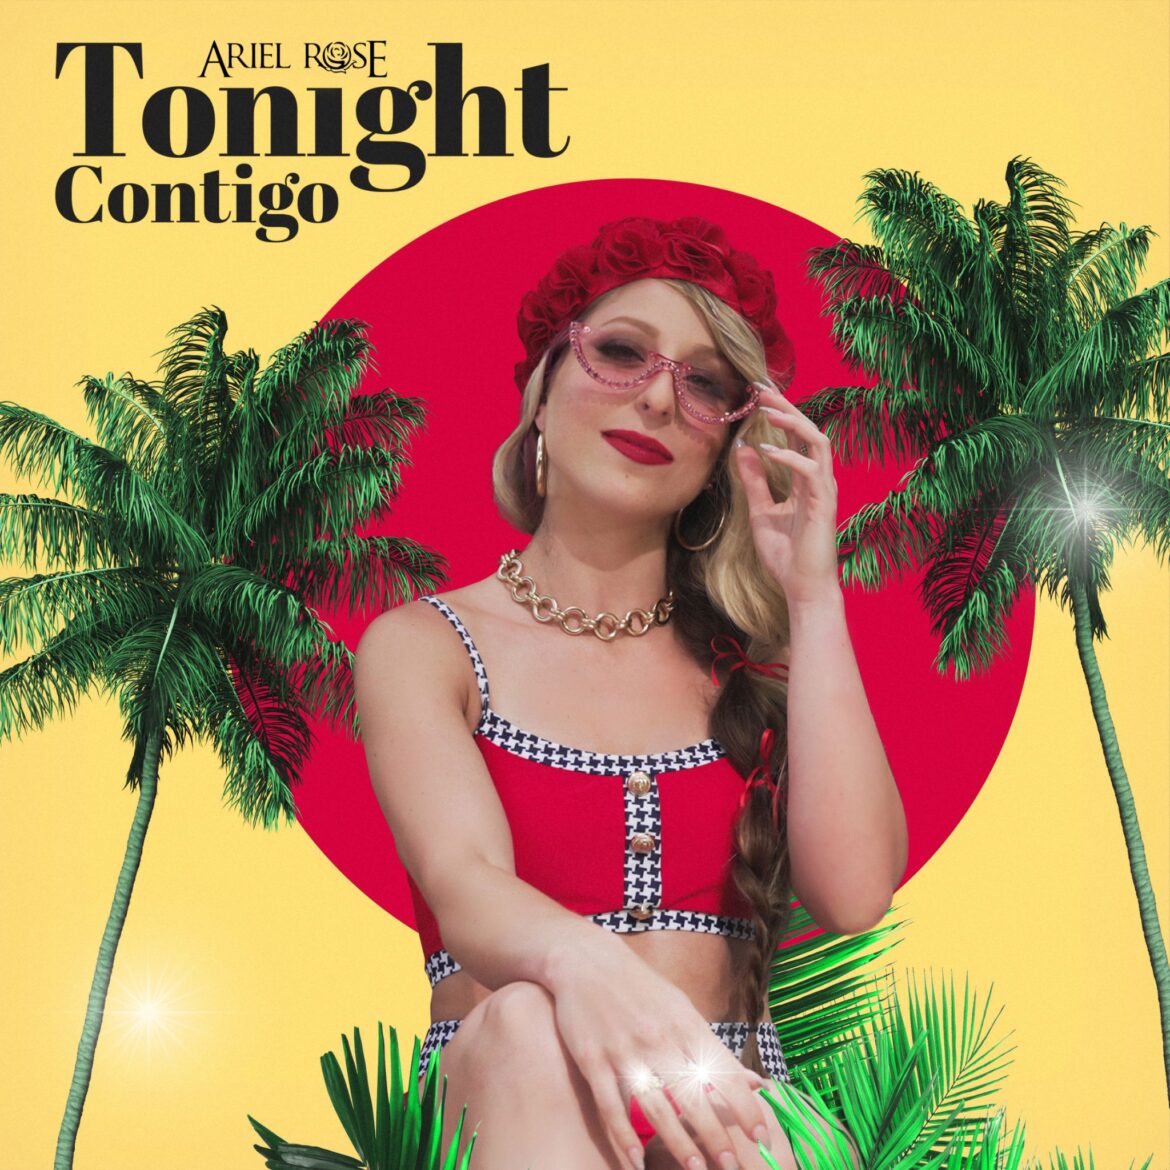 Ariel Rose lanza su nuevo sencillo “Tonight Contigo” con un sonido pop y ritmo latino